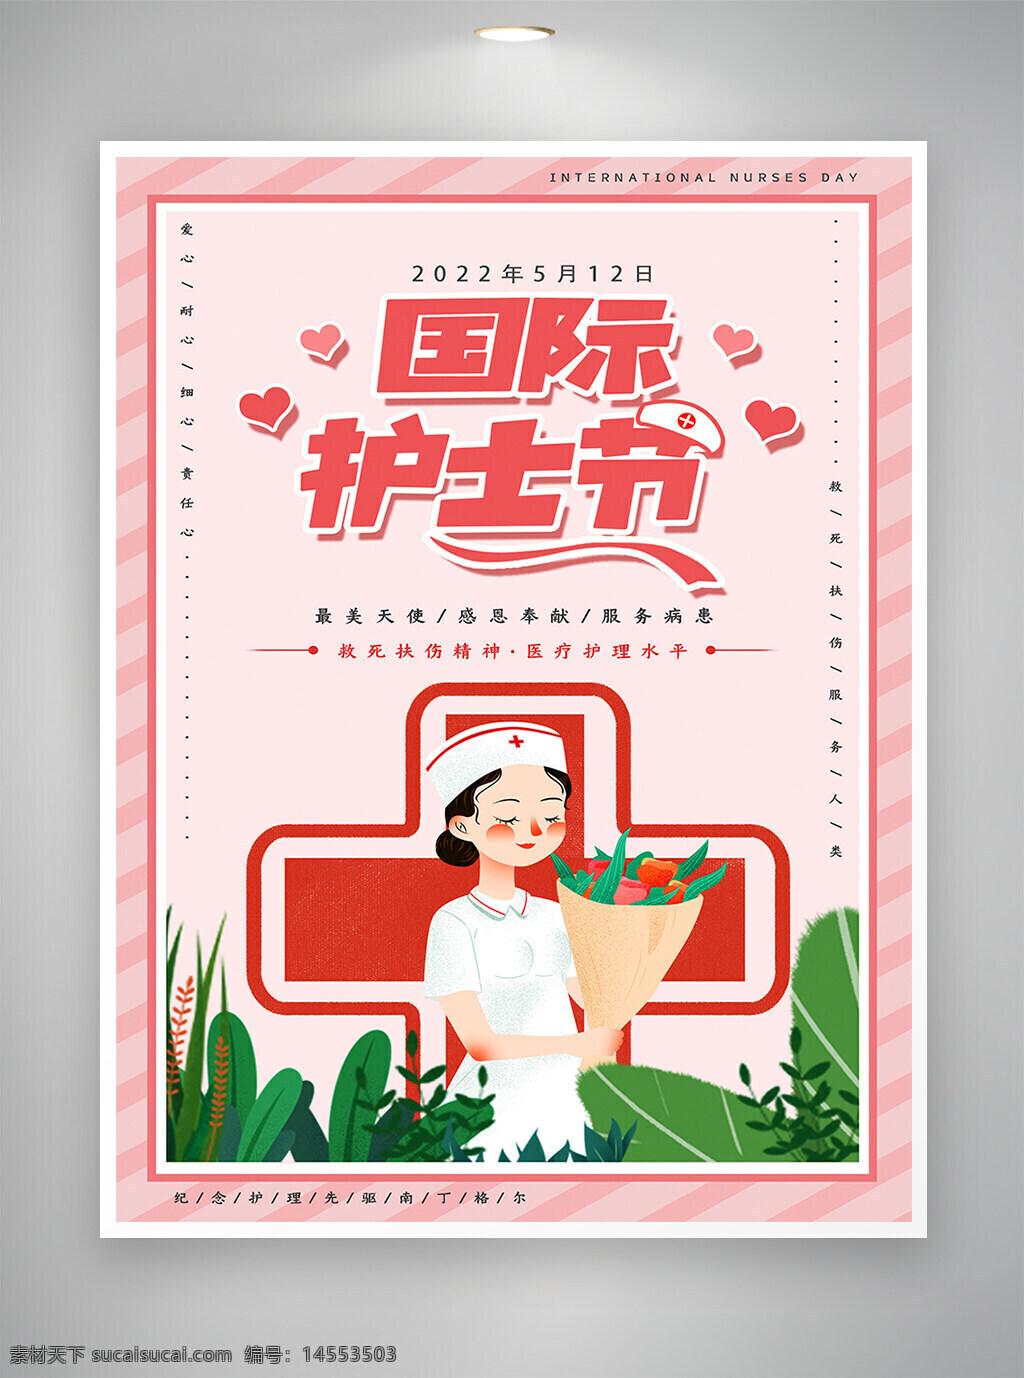 卡通海报 手绘风 手绘风海报 国际护士节 护士节 护士节海报 简约海报 海报